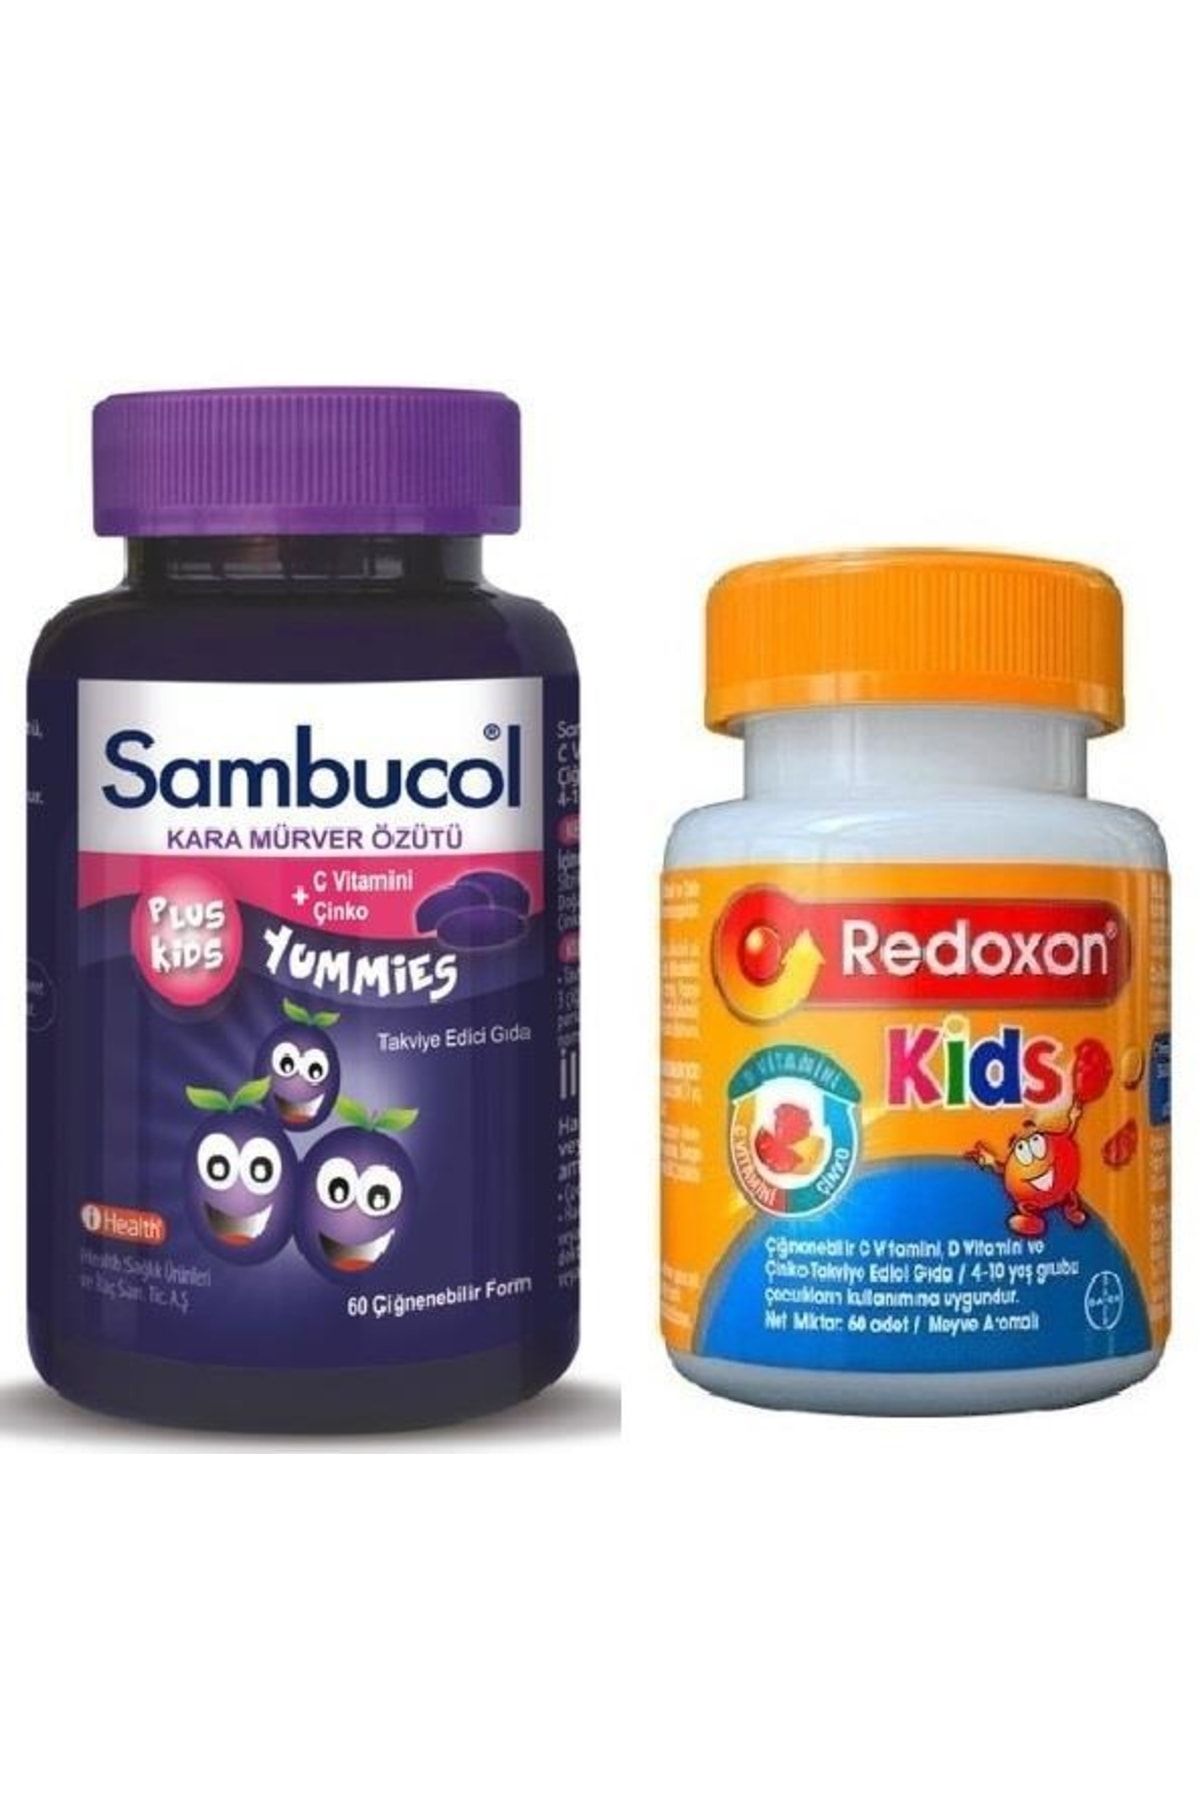 Sambucol Plus Kids Yummies 60 Çiğneme Tableti+redoxon Kids 60 Tablet